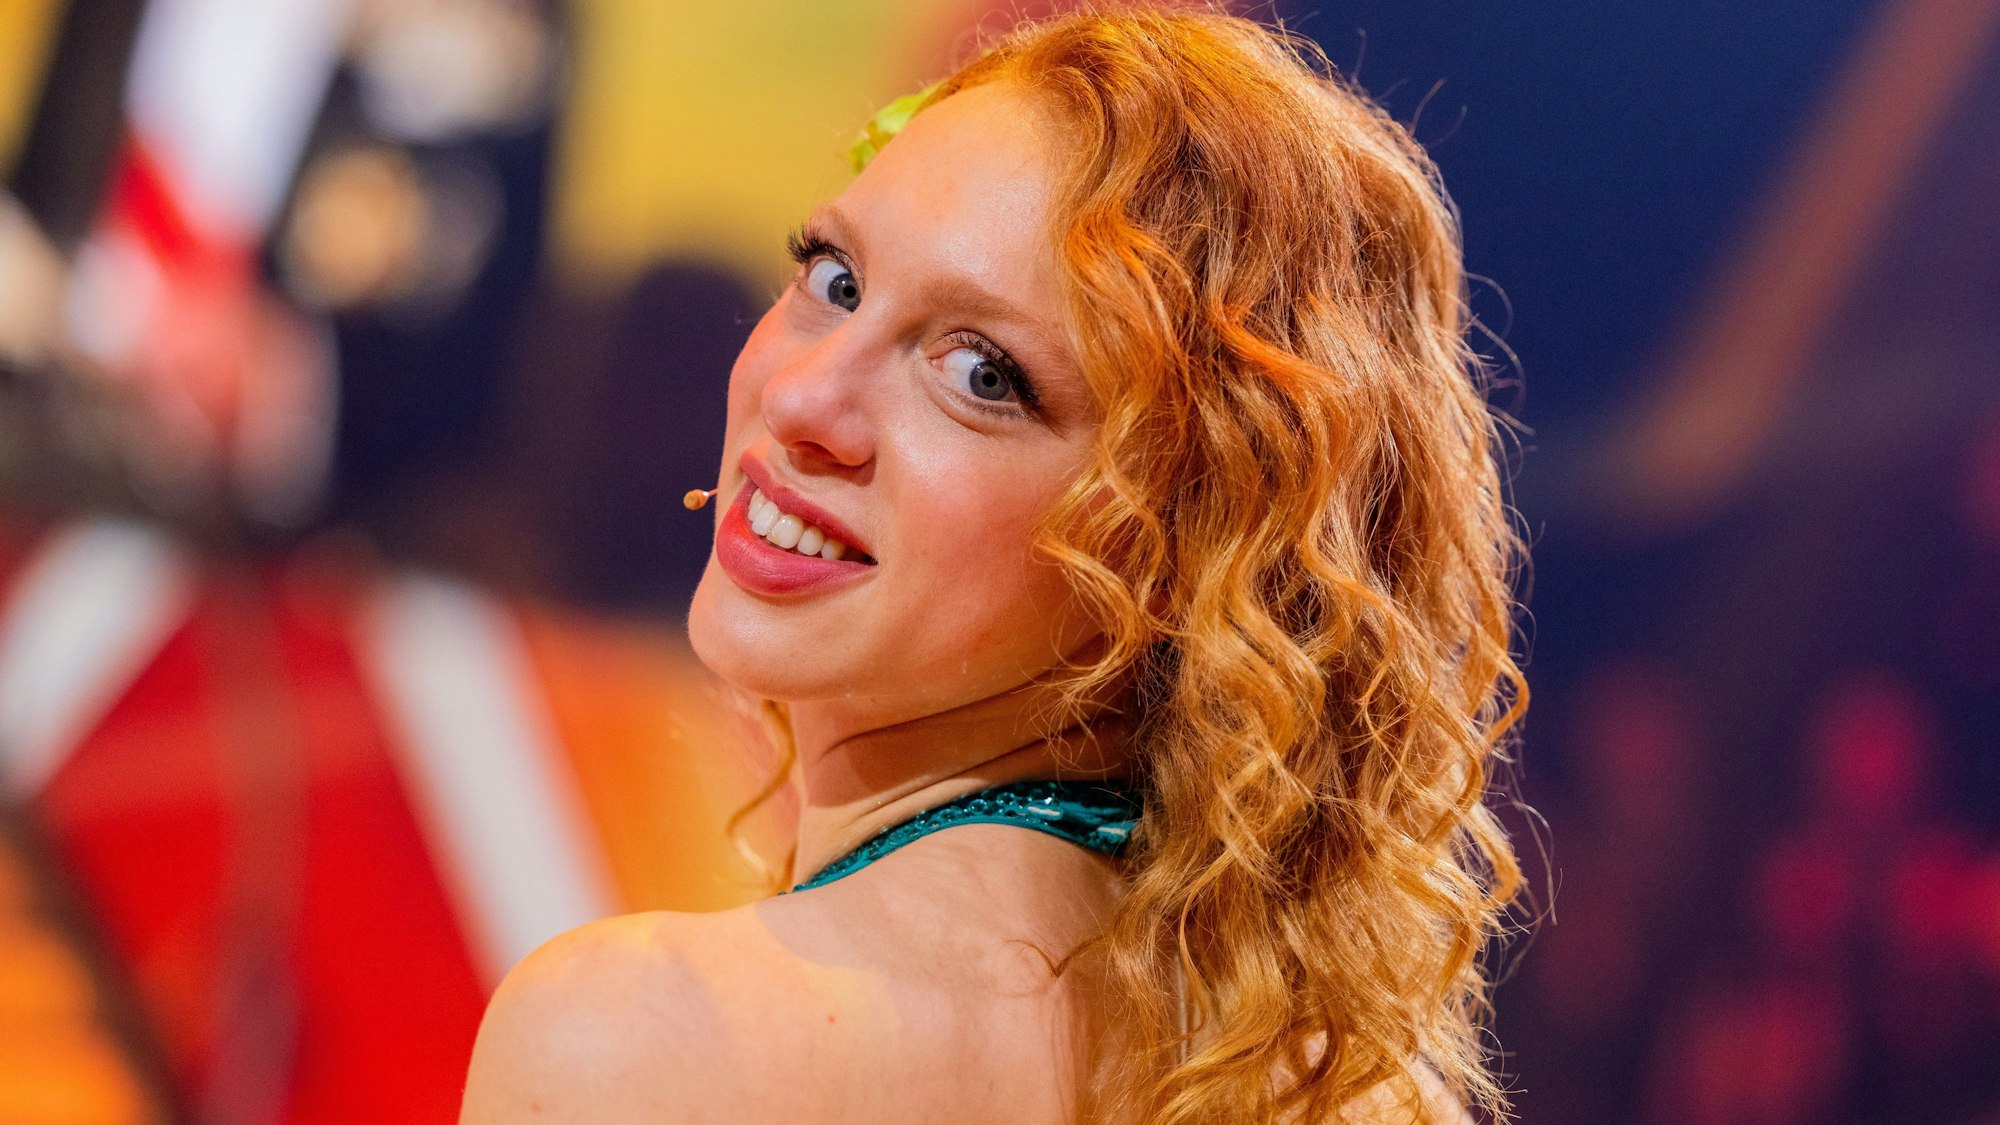 Anna Ermakova, Model, steht nach der RTL-Tanzshow „Let's Dance“ im Coloneum. Sie dreht sie mit dem Kopf und lächelt.